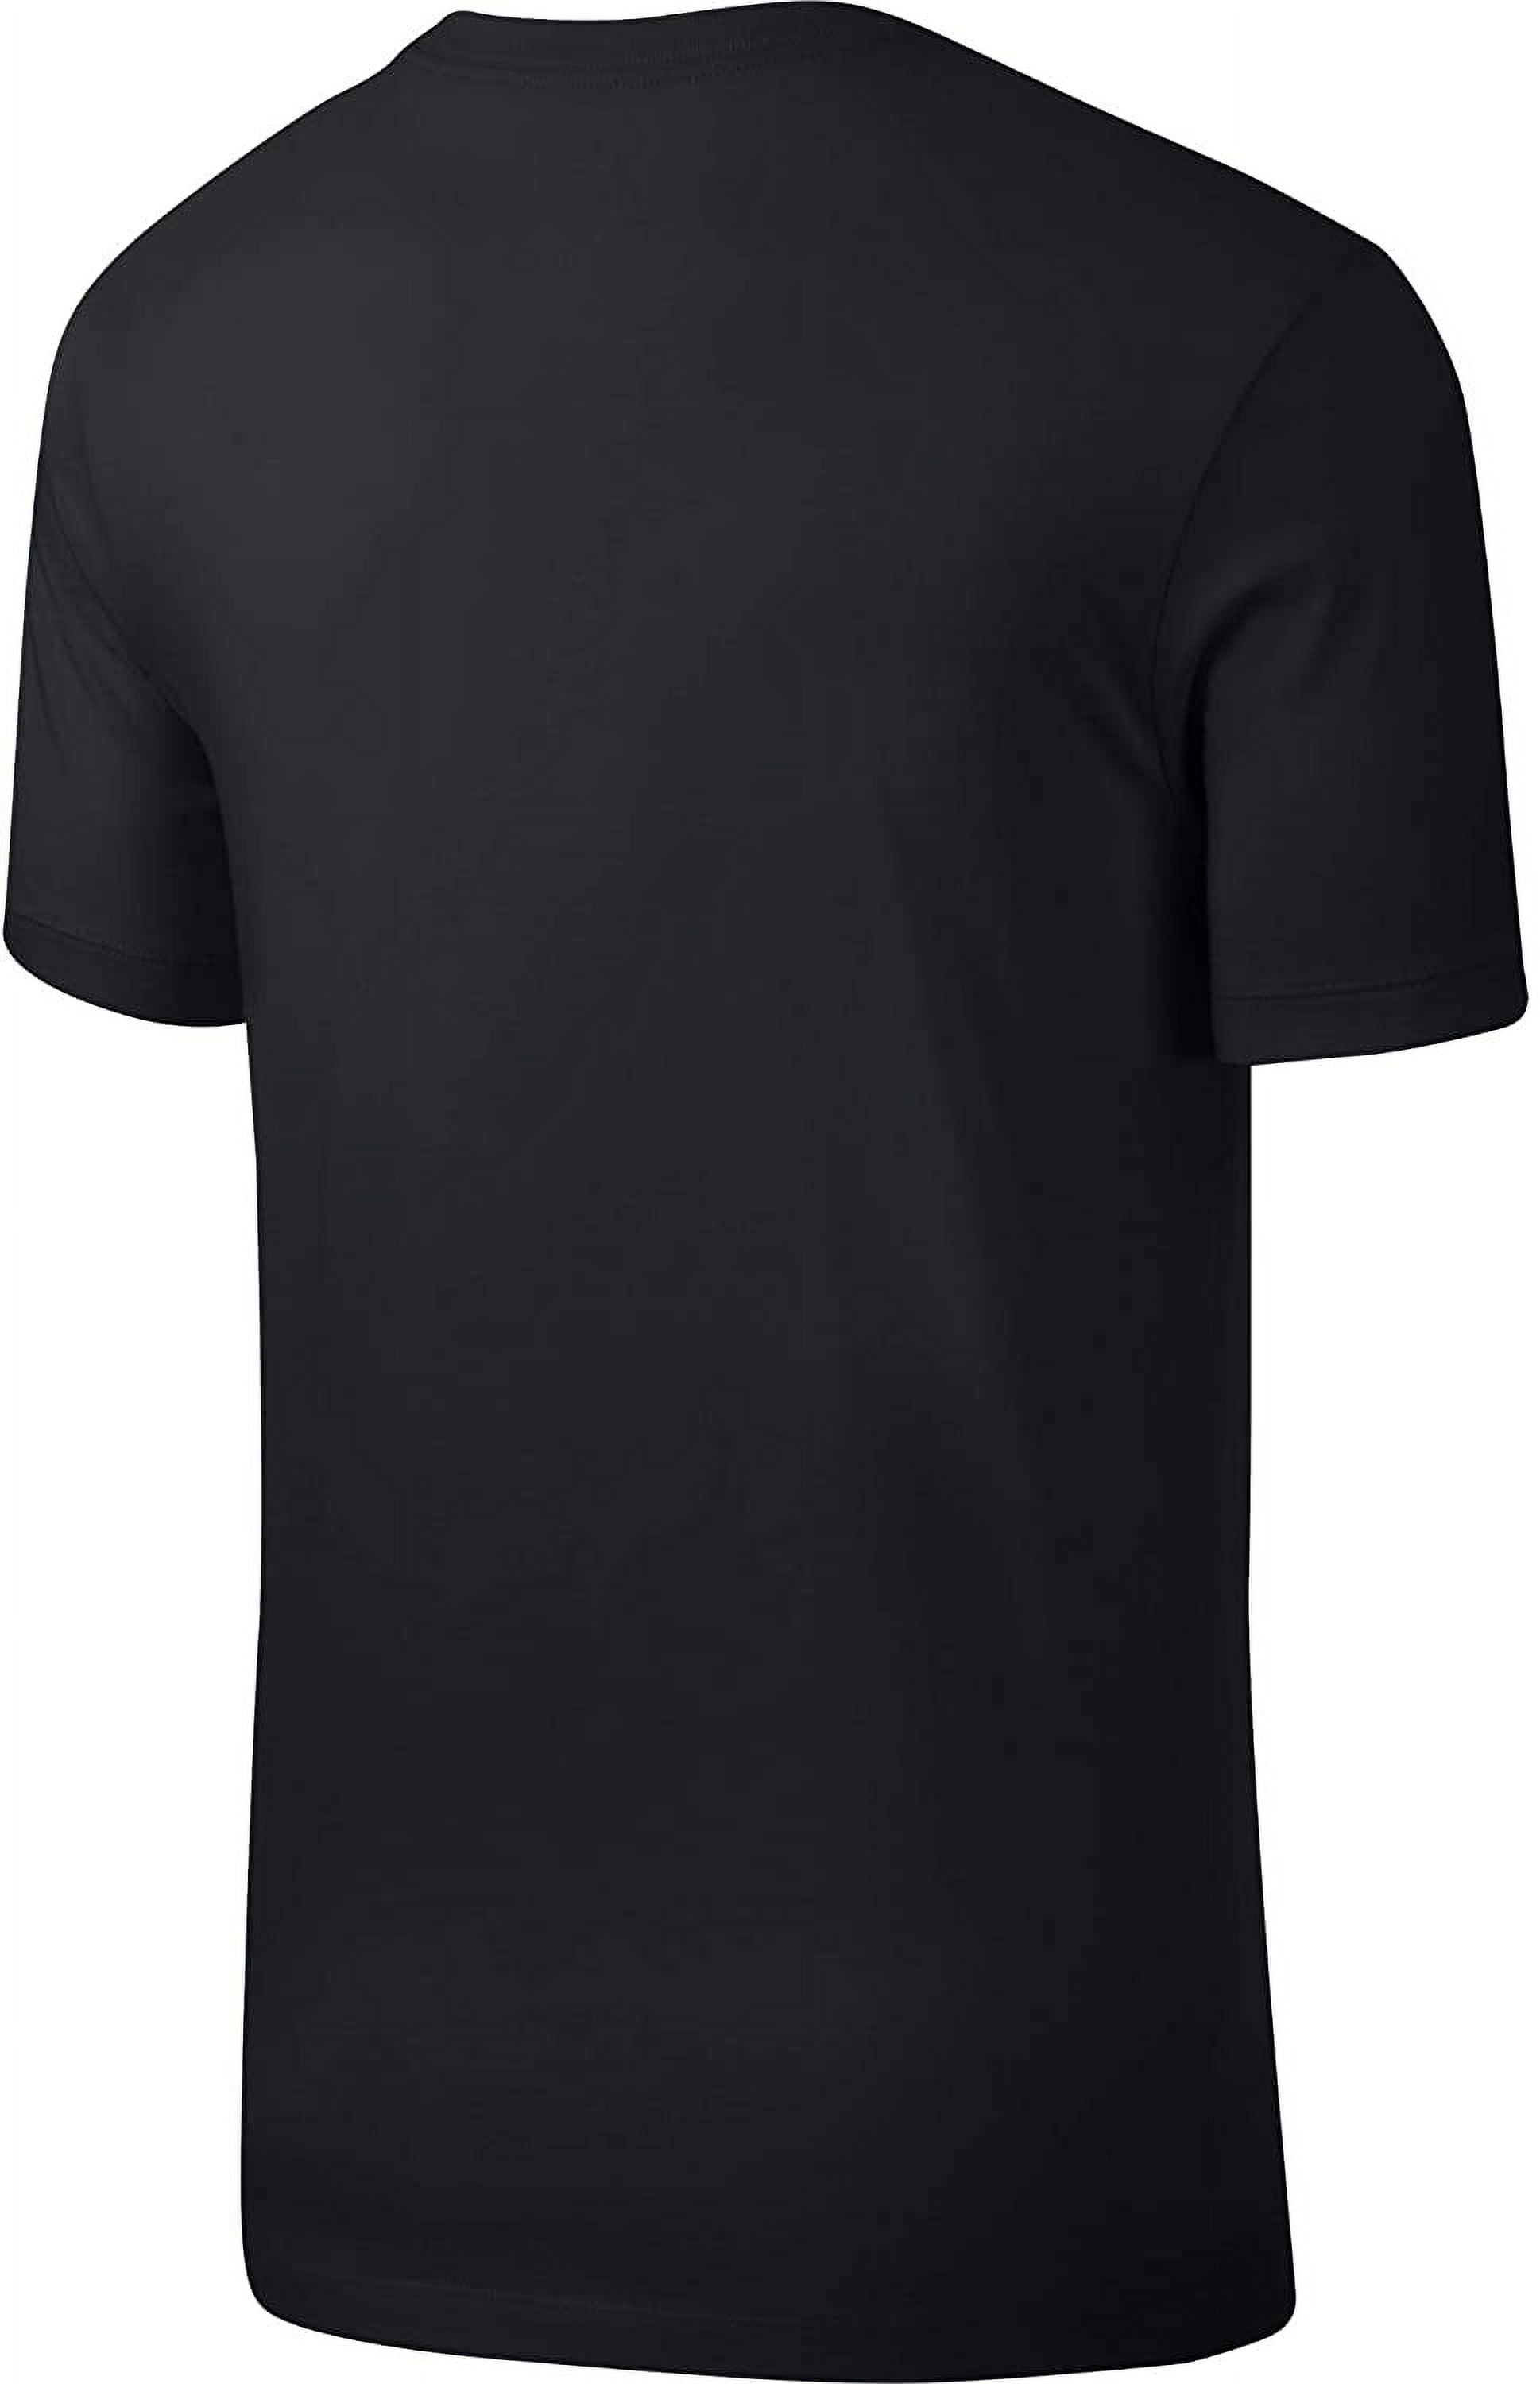 Nike t shirt premium cena 30€ - 40€